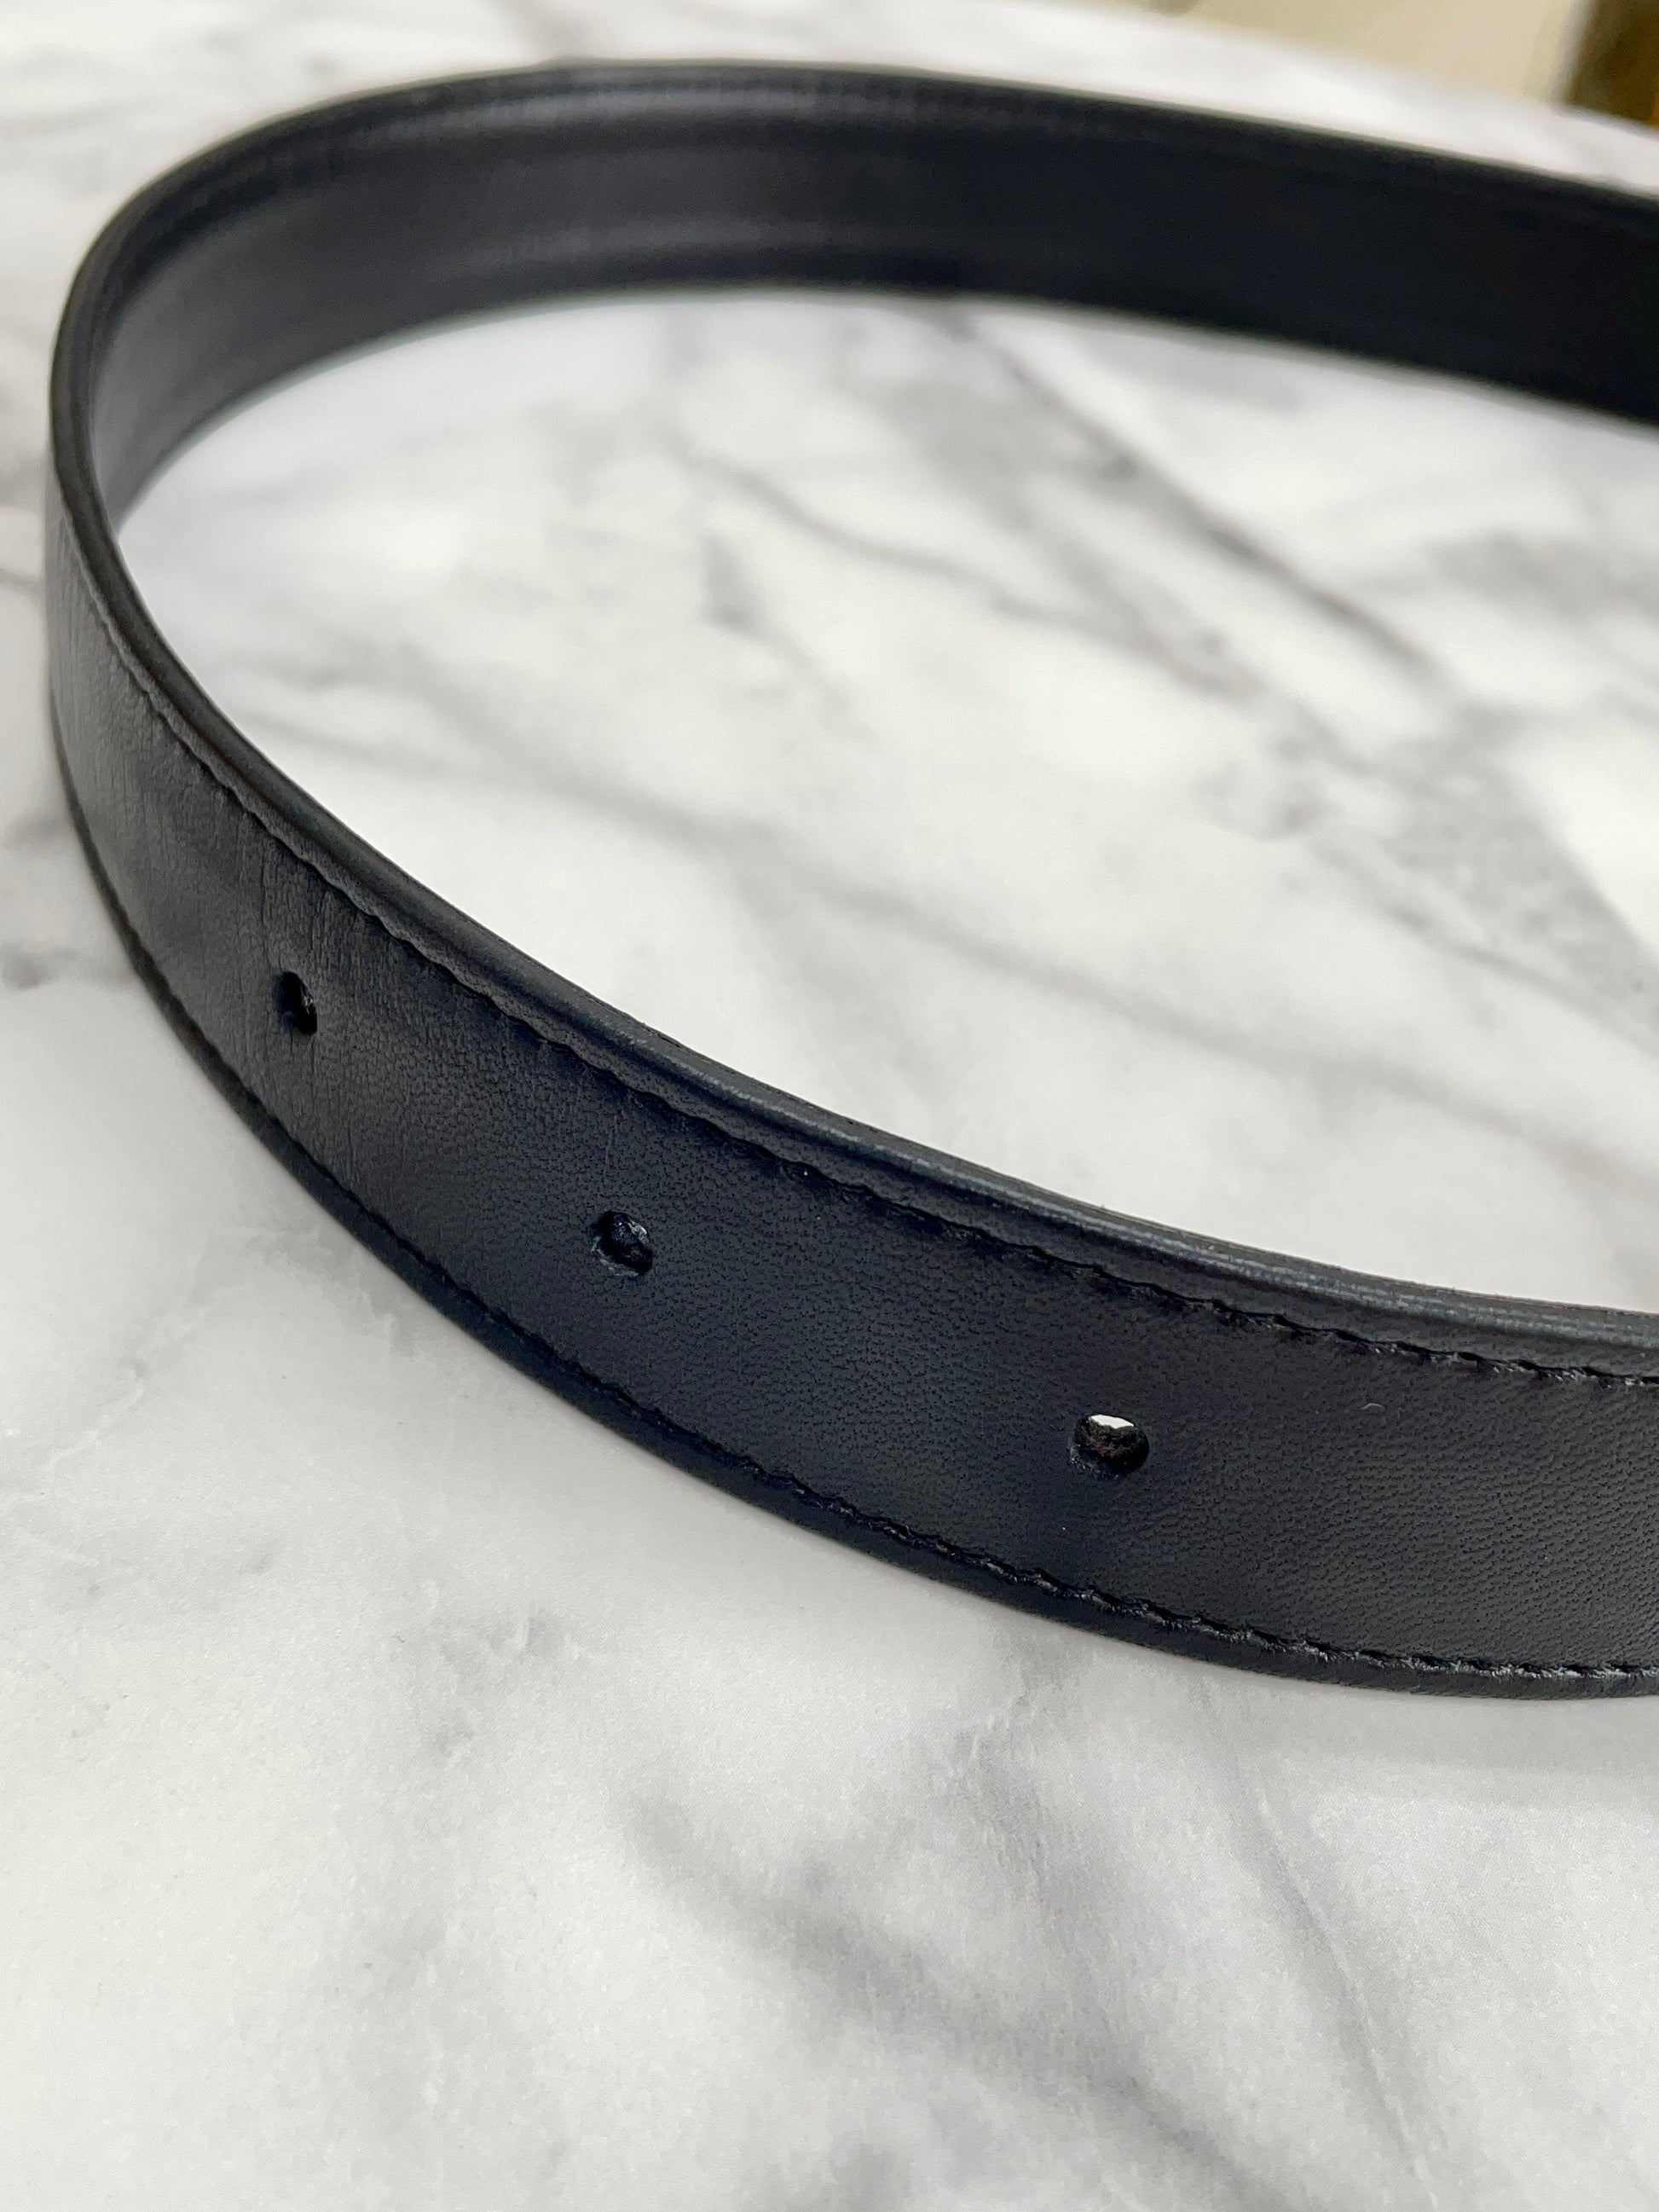 Louis Vuitton Vintage - Leather Belt - Black Silver - Leather Belt